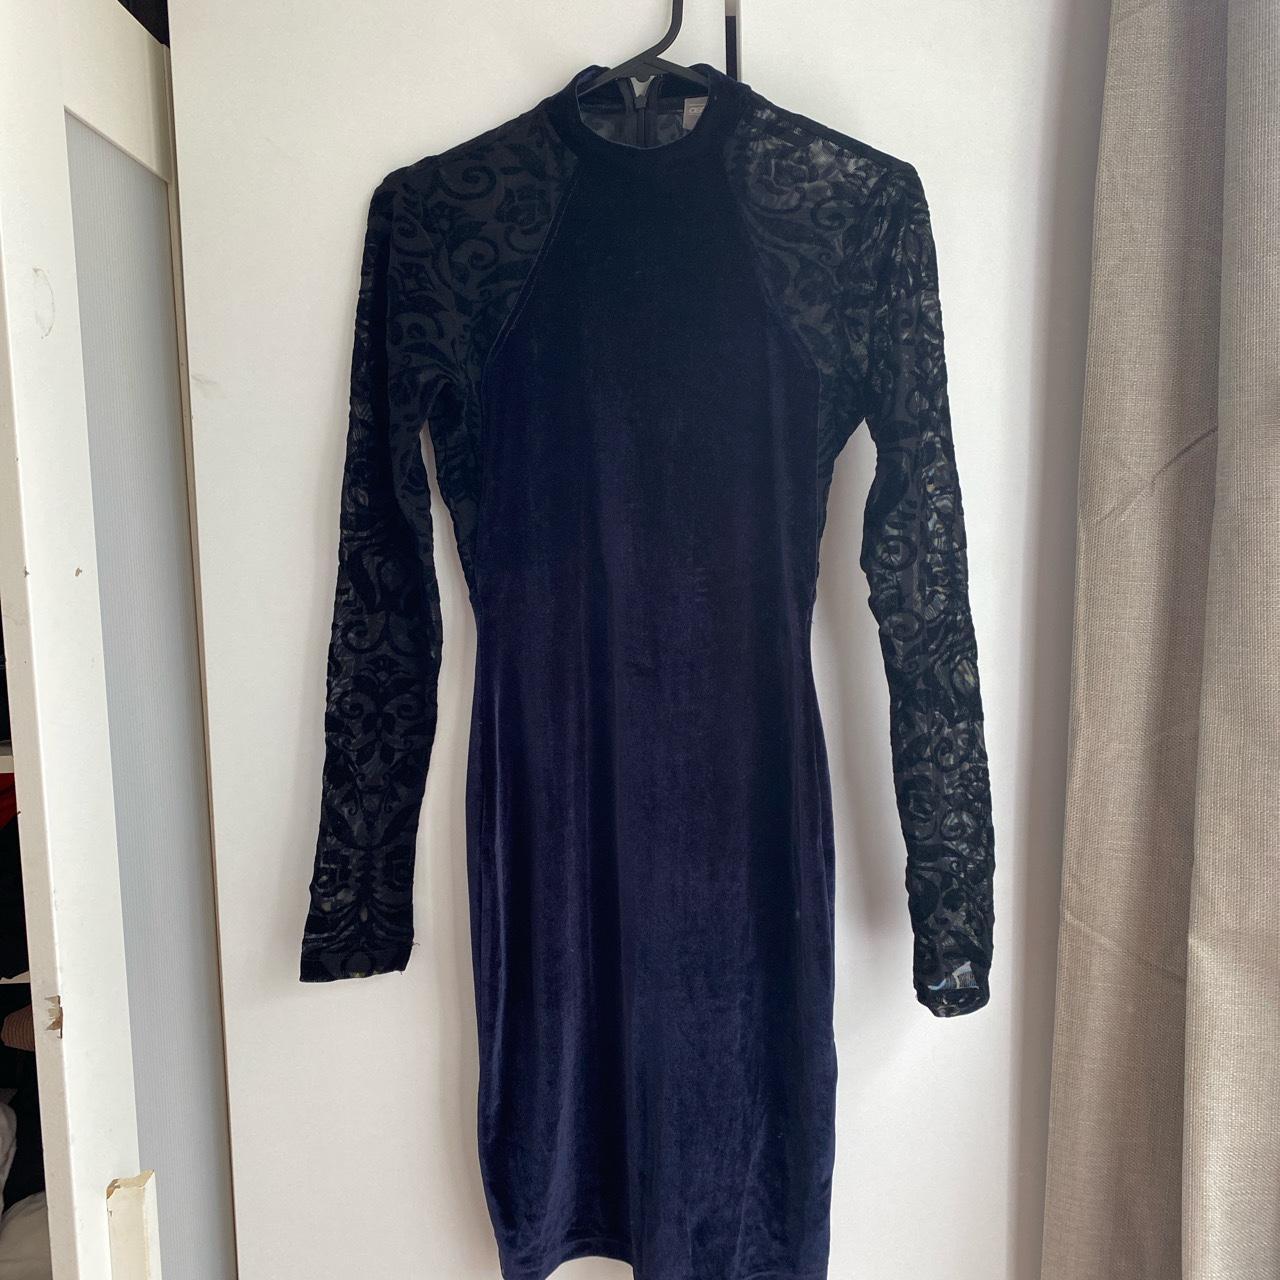 Gorgeous black and navy blue velvet and sheer dress... - Depop